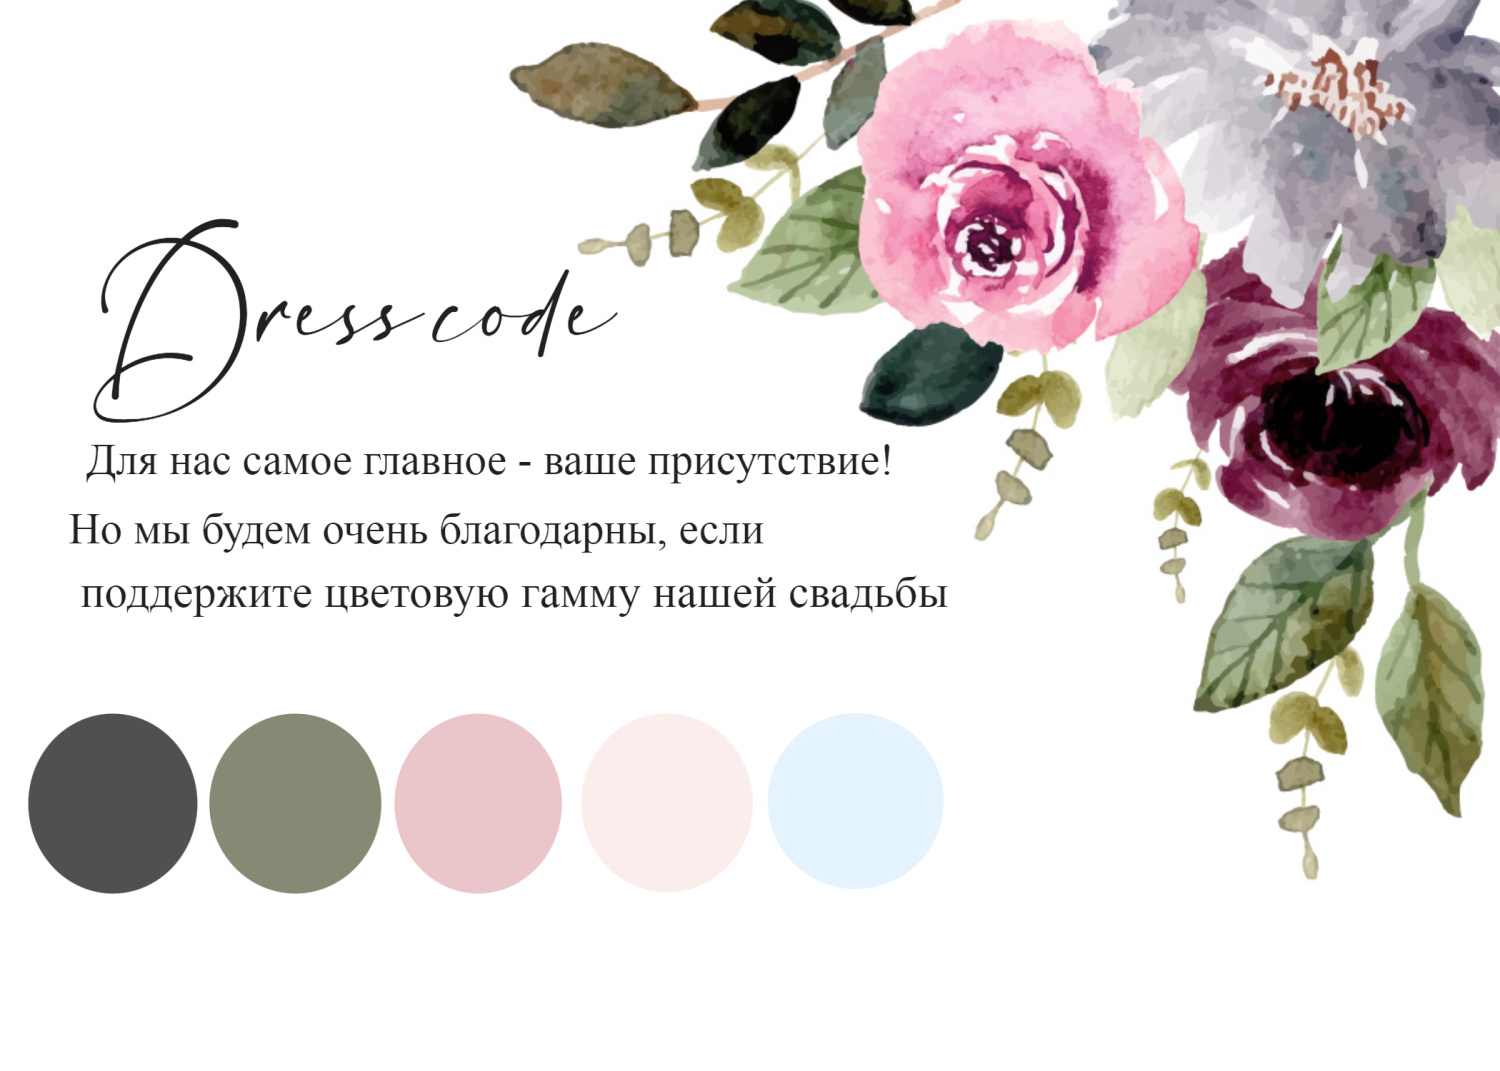 Дресс-код в стиле на свадьбу с цветами